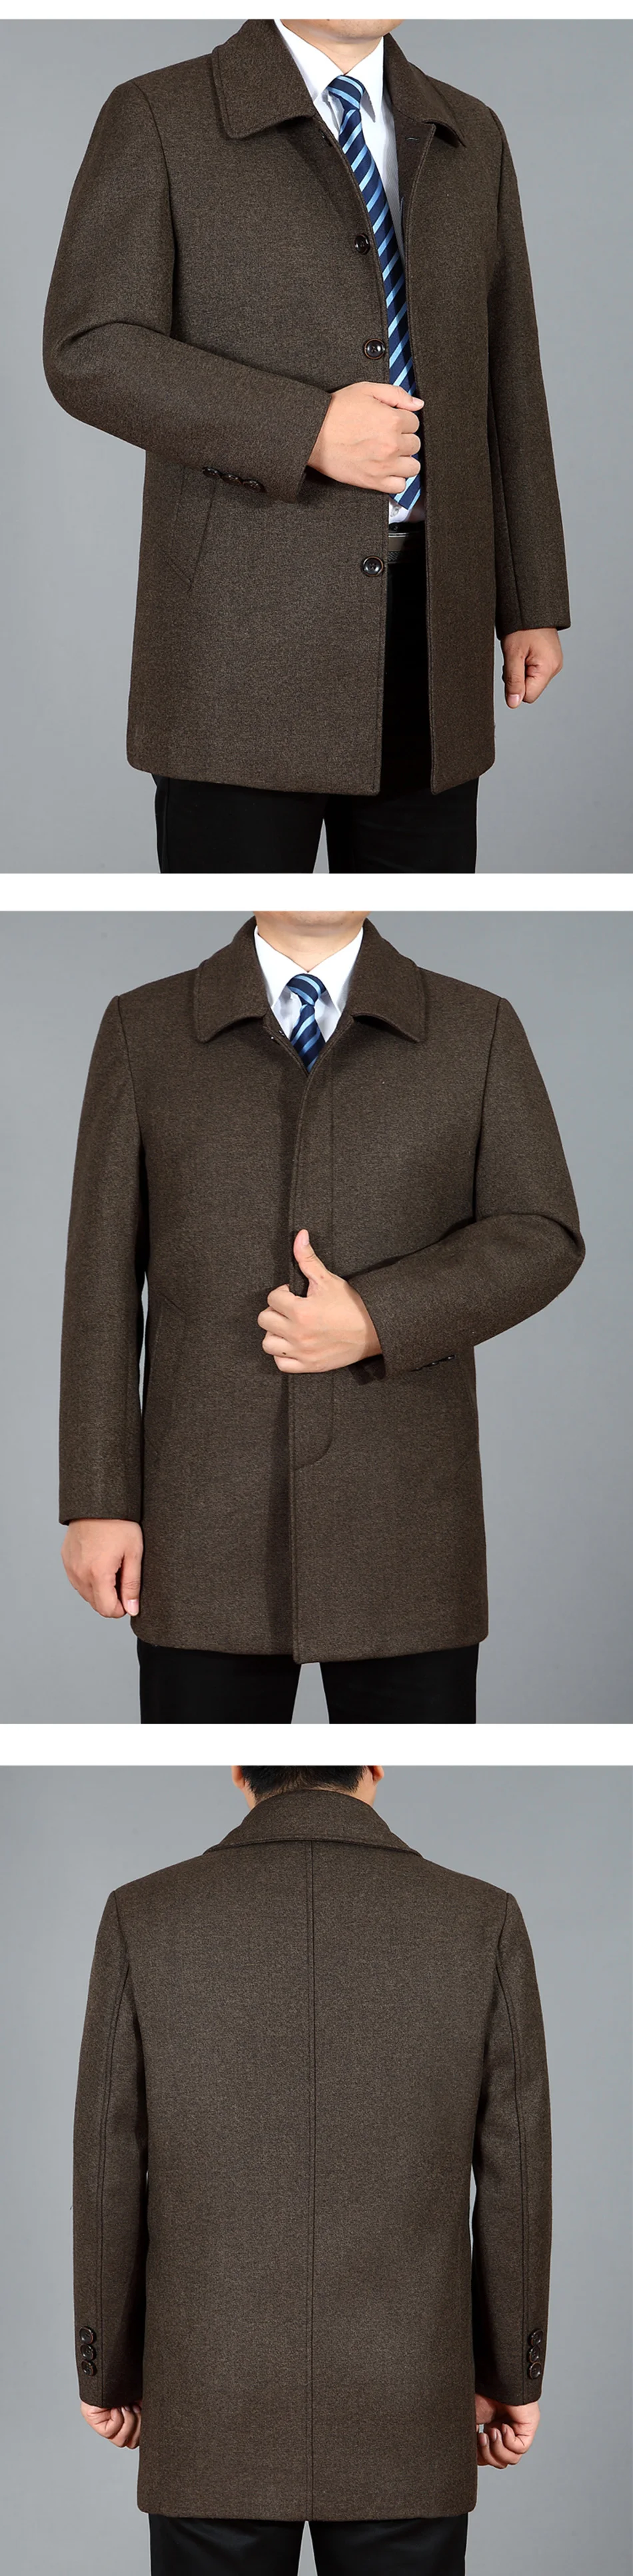 Для мужчин шерстяное пальто осень-зима Для мужчин s пальто Шерстяное пальто Для мужчин бушлат зимние куртки Дл